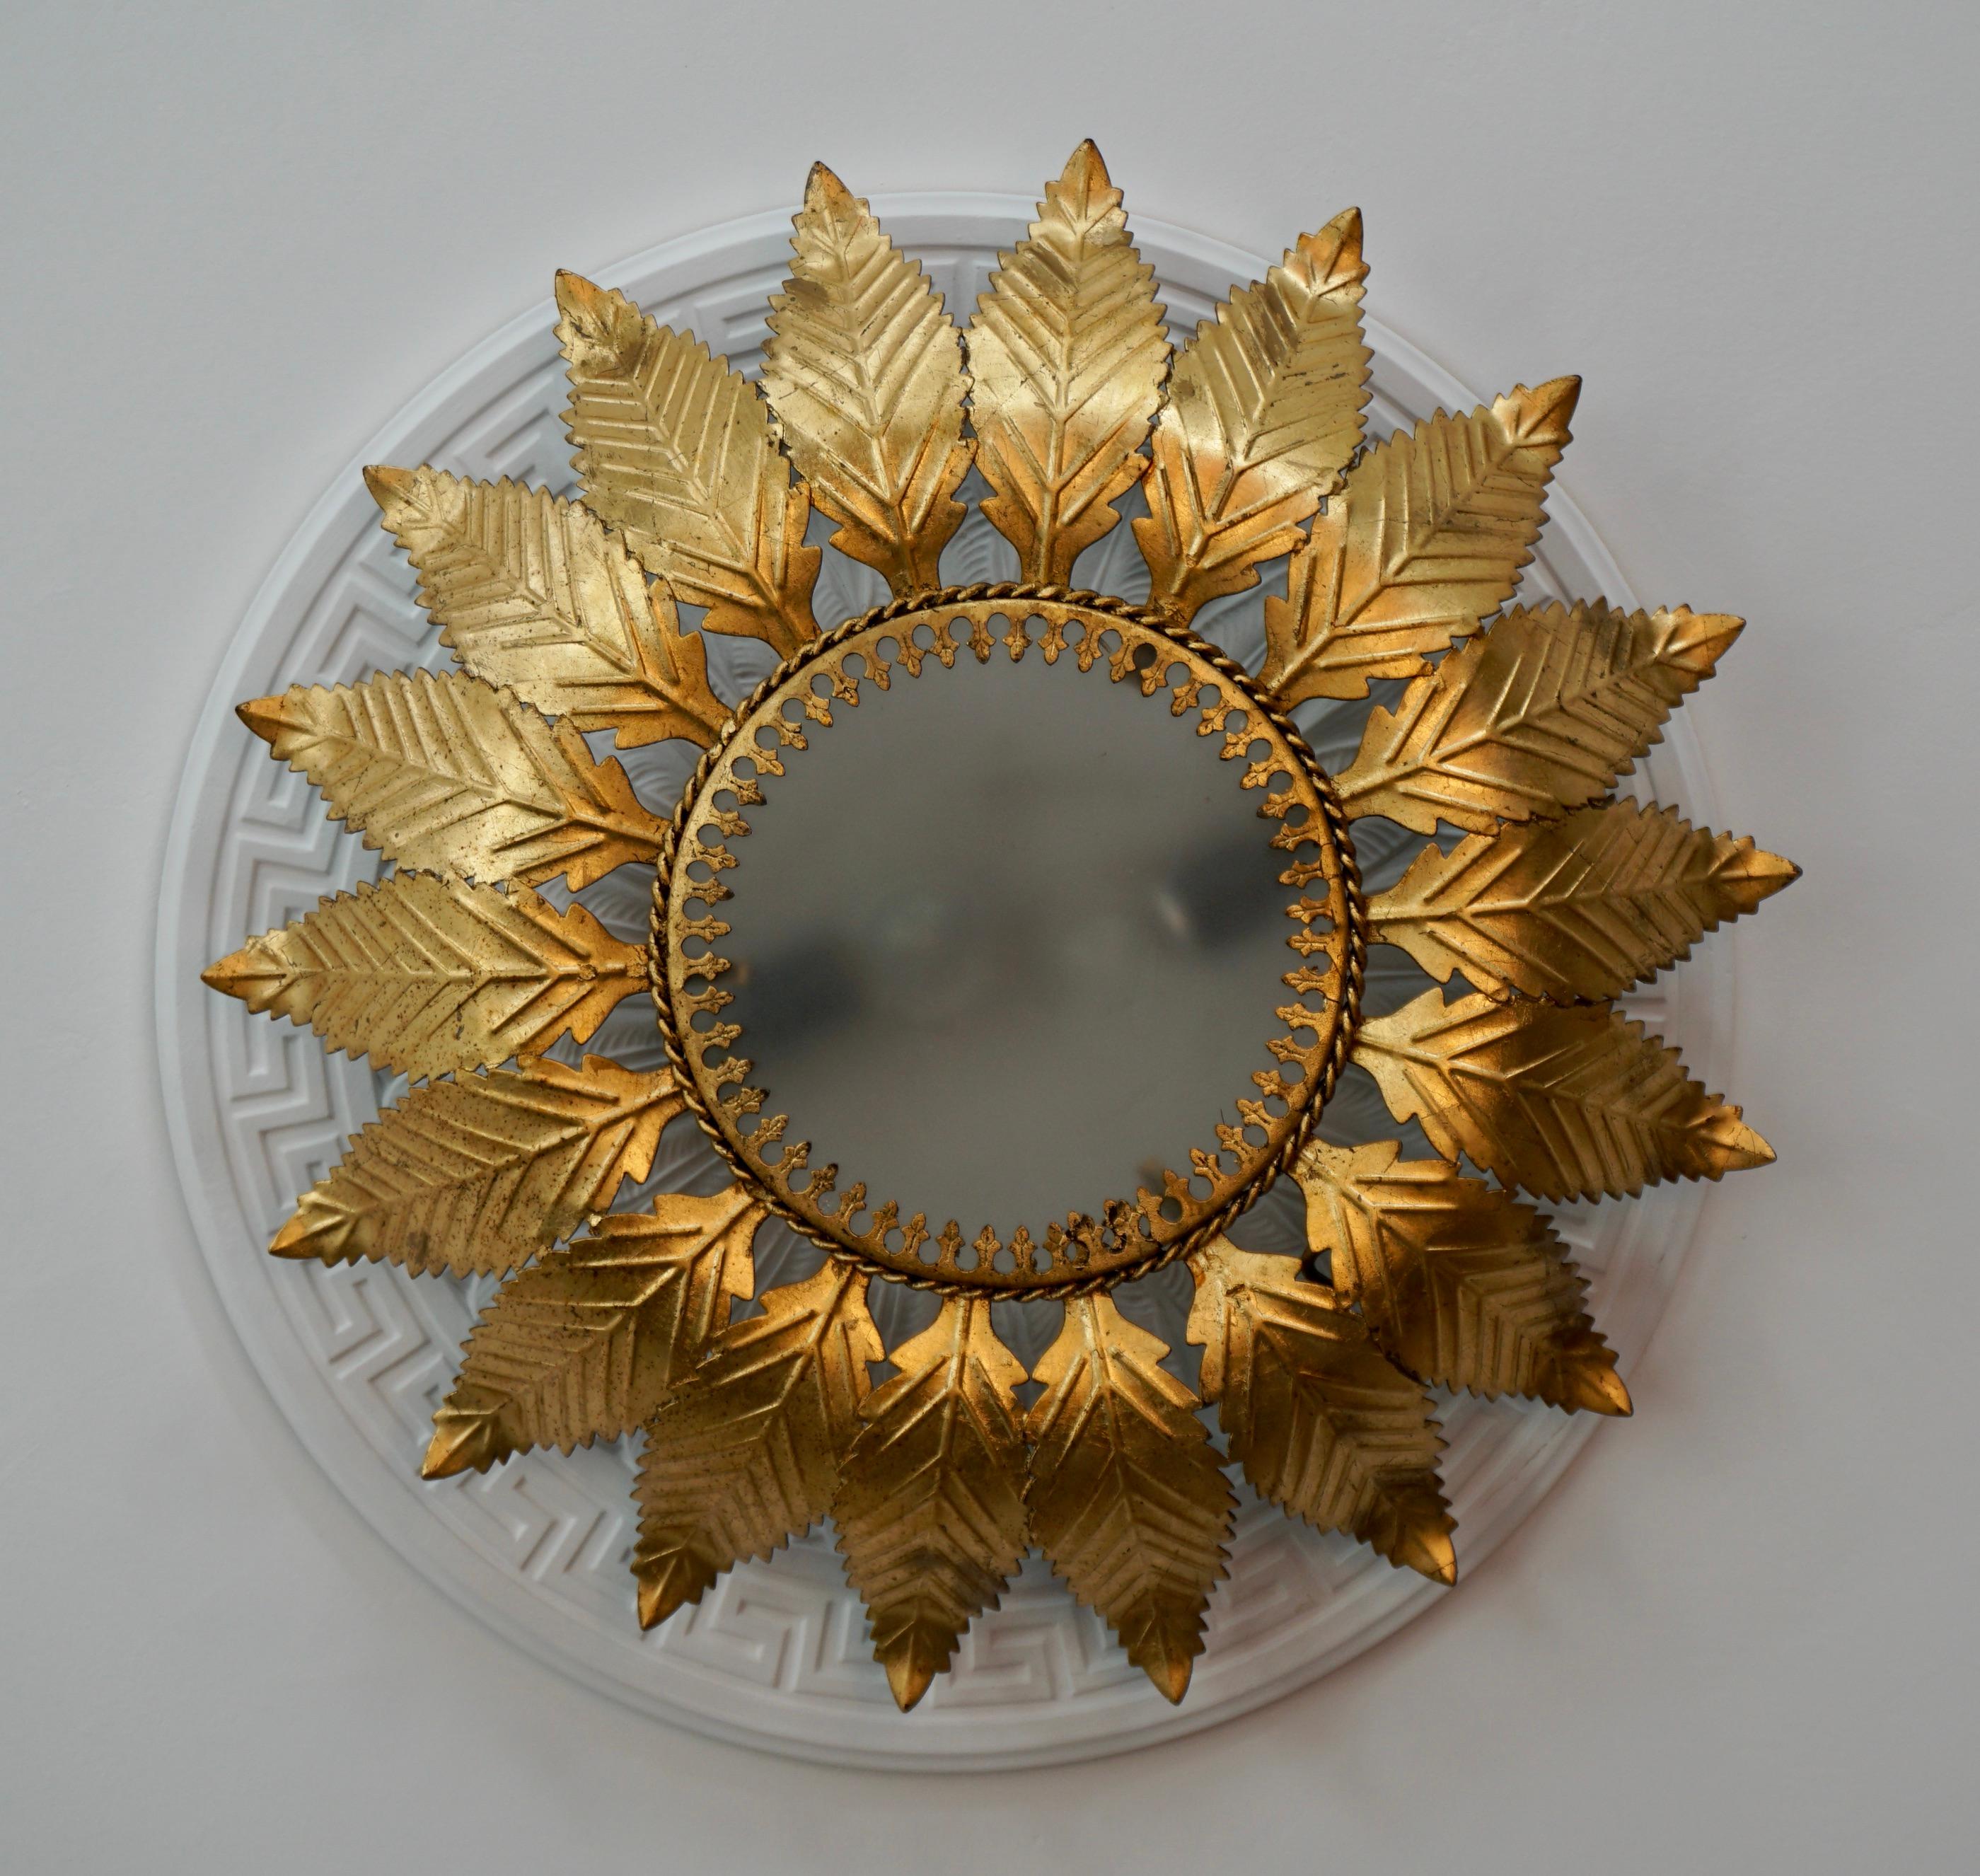 Très belle et grande applique solaire ou Flush mount avec structure en métal doré et verre opalin. Un objet unique qui illuminera parfaitement votre intérieur et y apportera une véritable touche design.

Diamètre 19,6